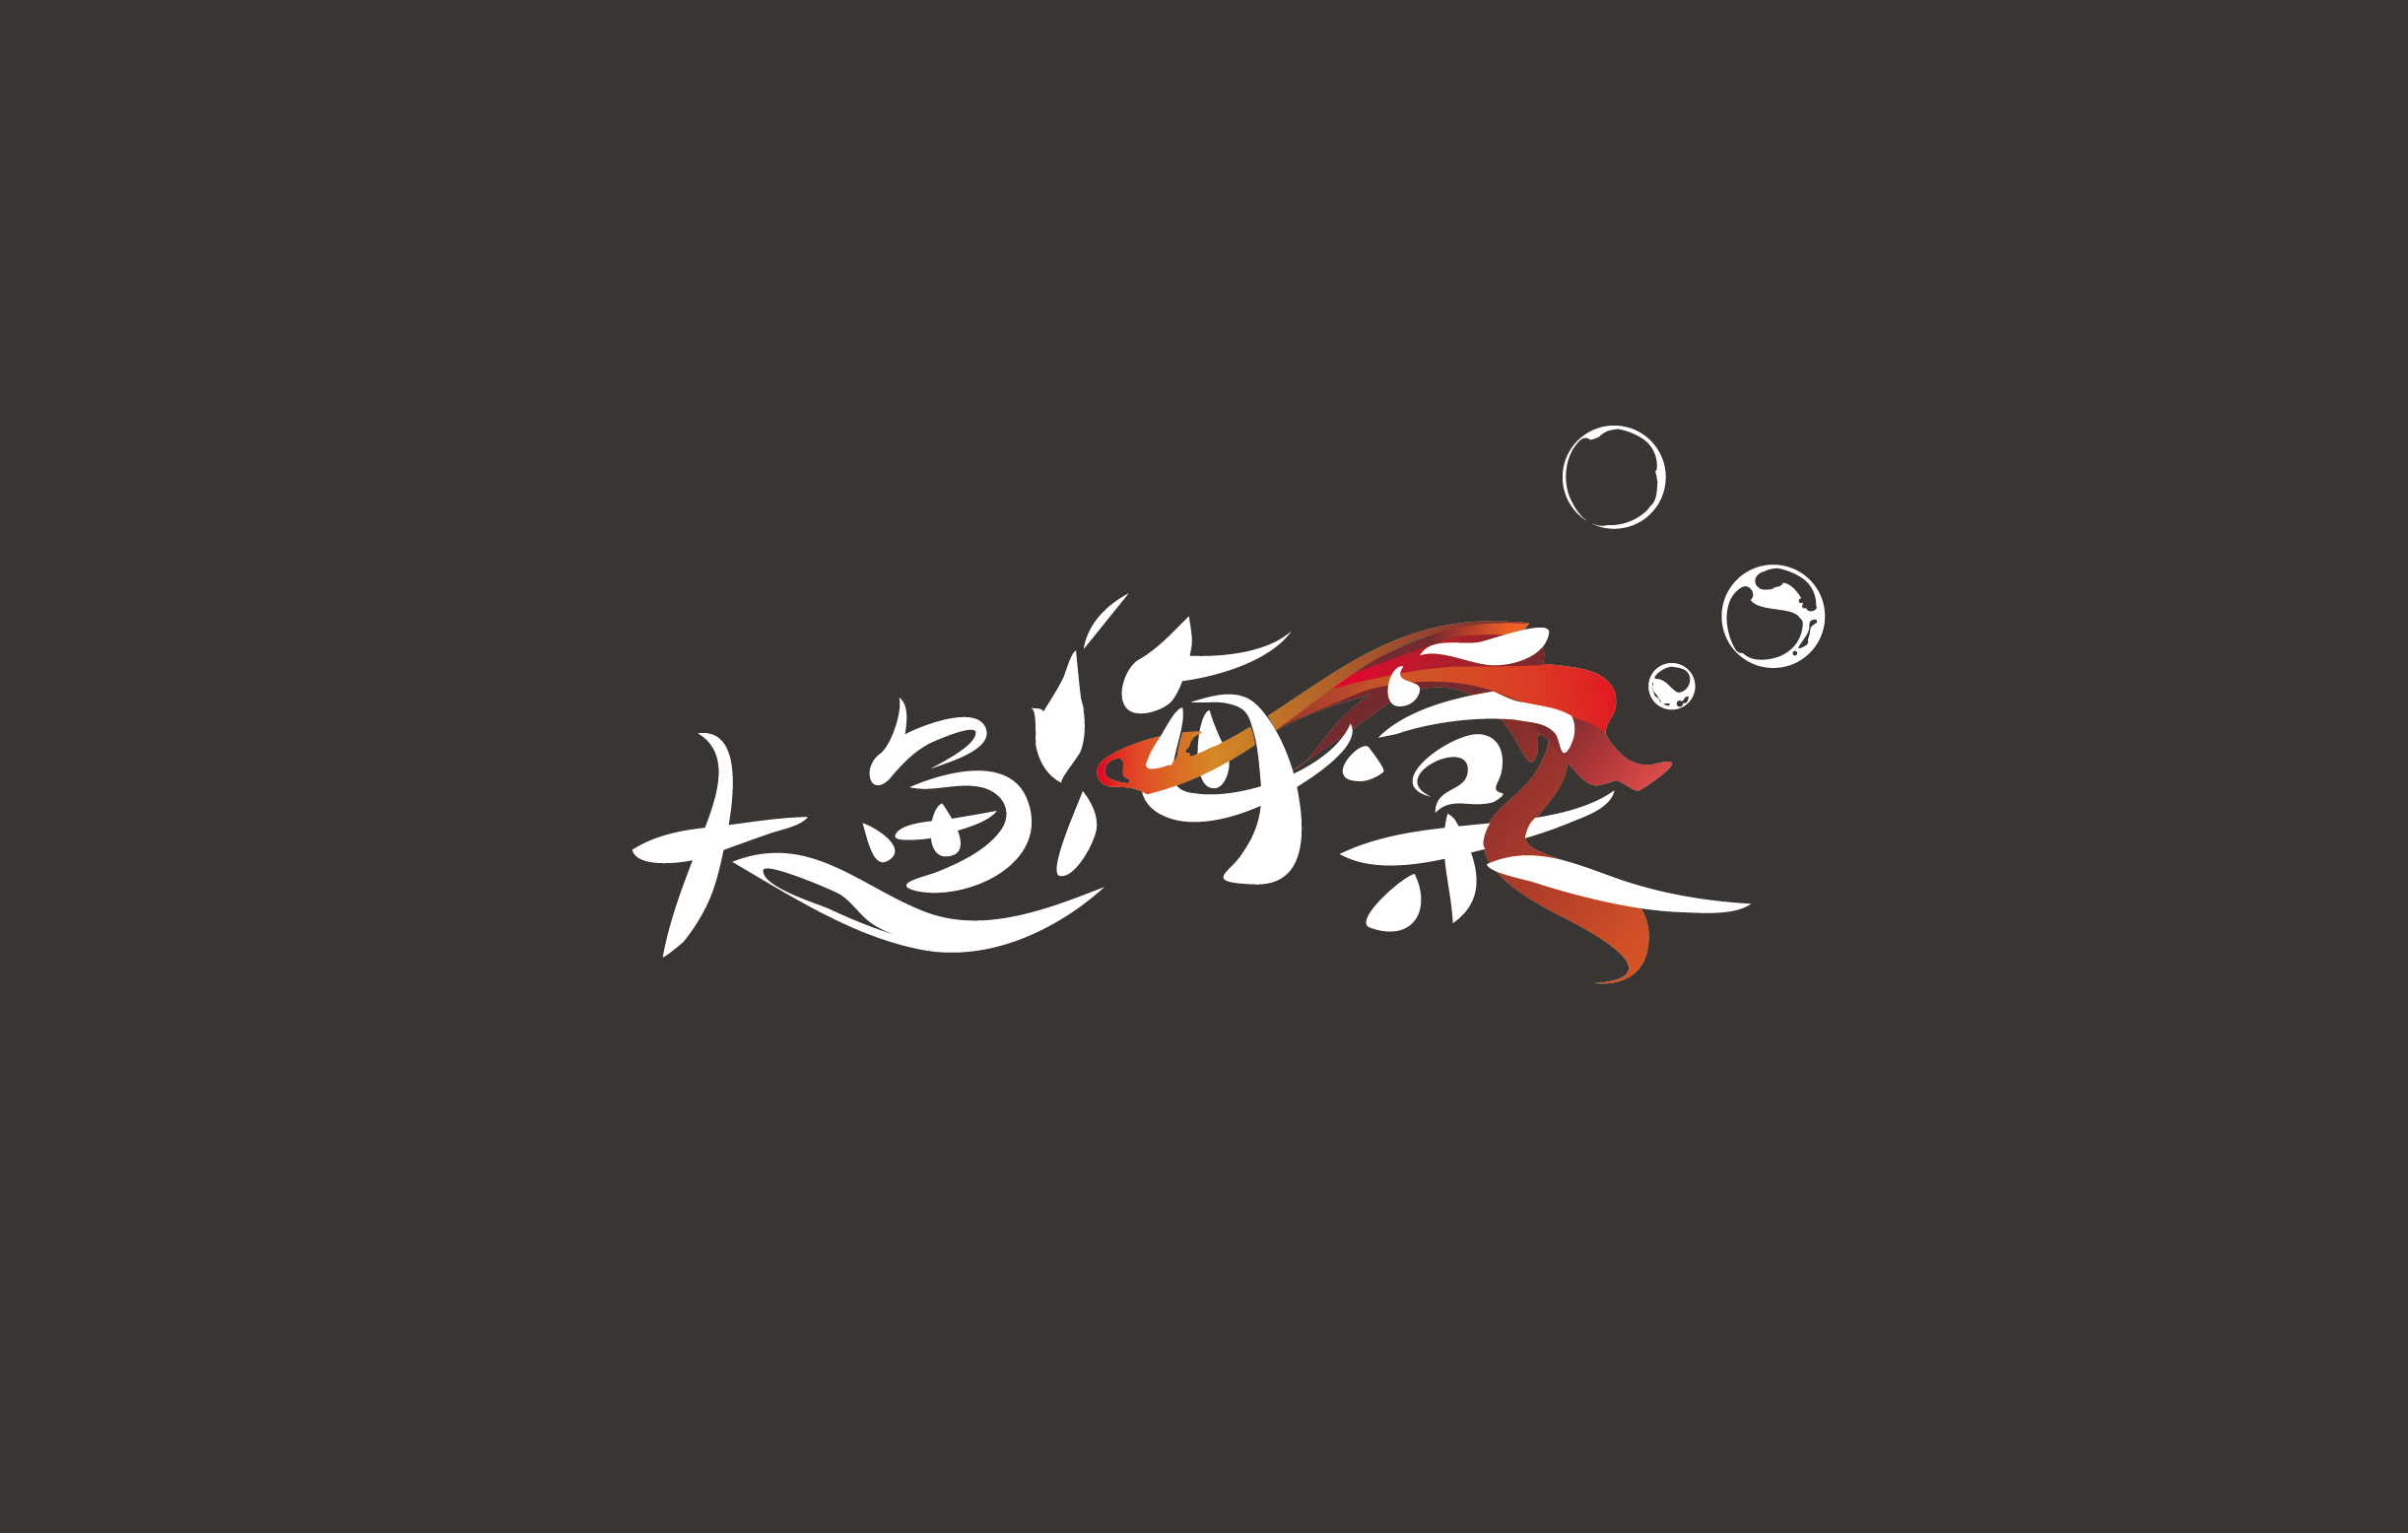 大鱼海棠字体设计图片